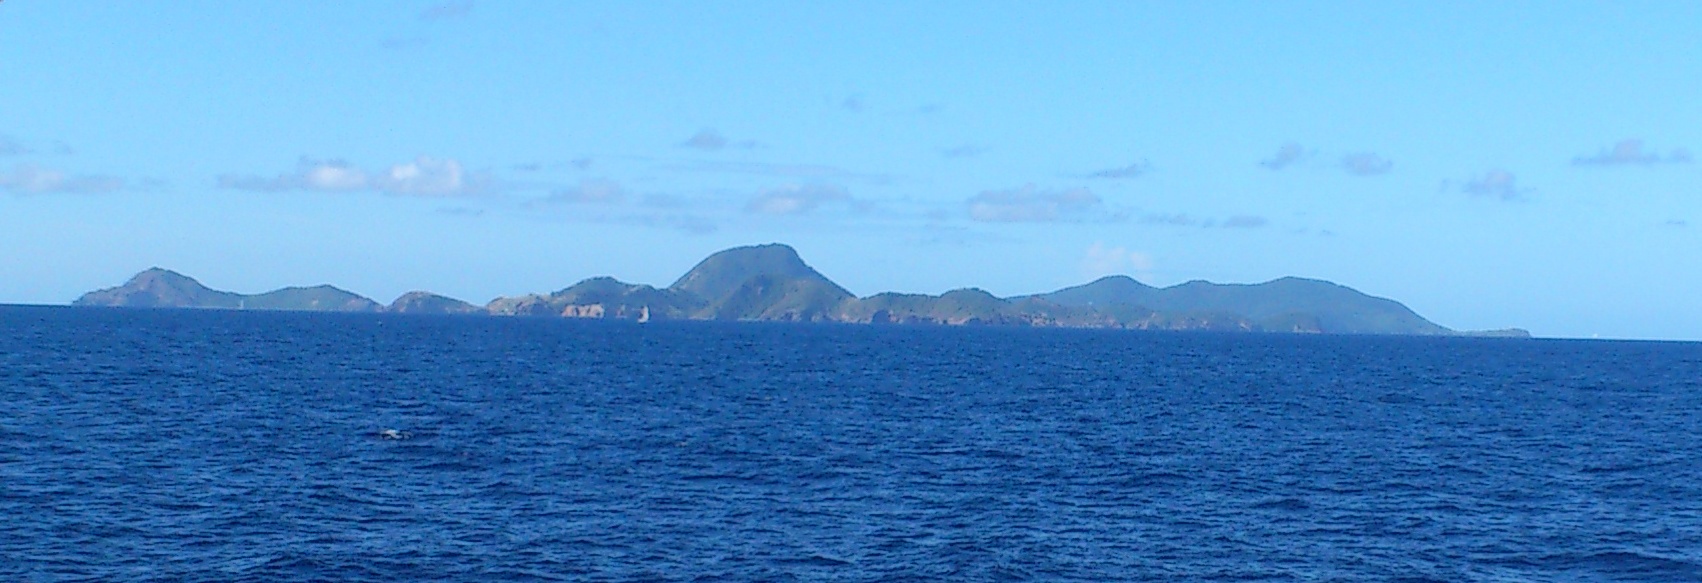 Vue sur les îles des Saintes depuis le bateau